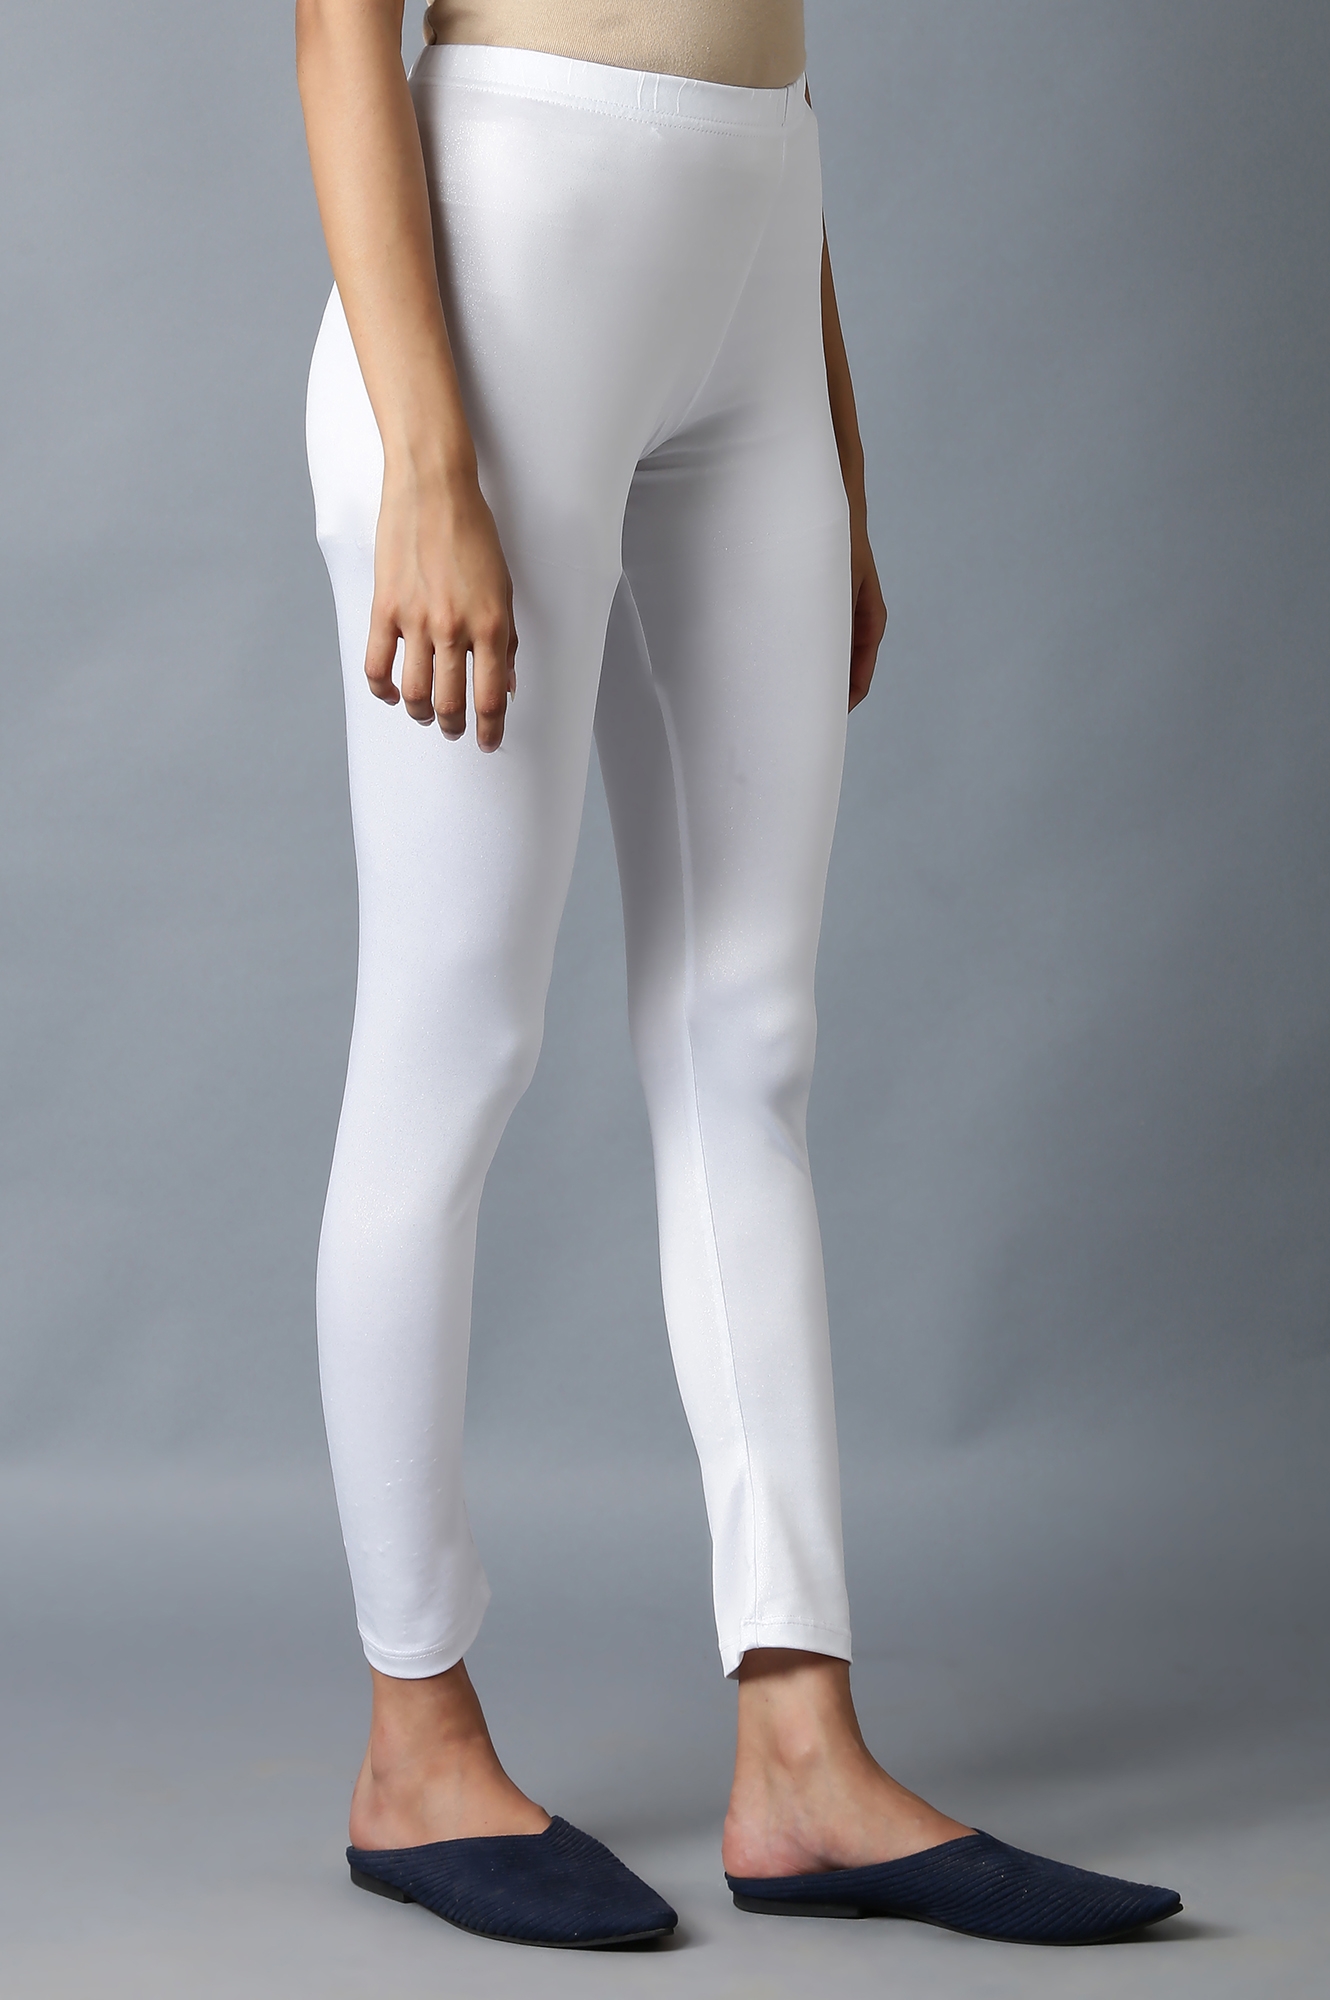 Elleven | Shimmer White Snug Fit Tights 3